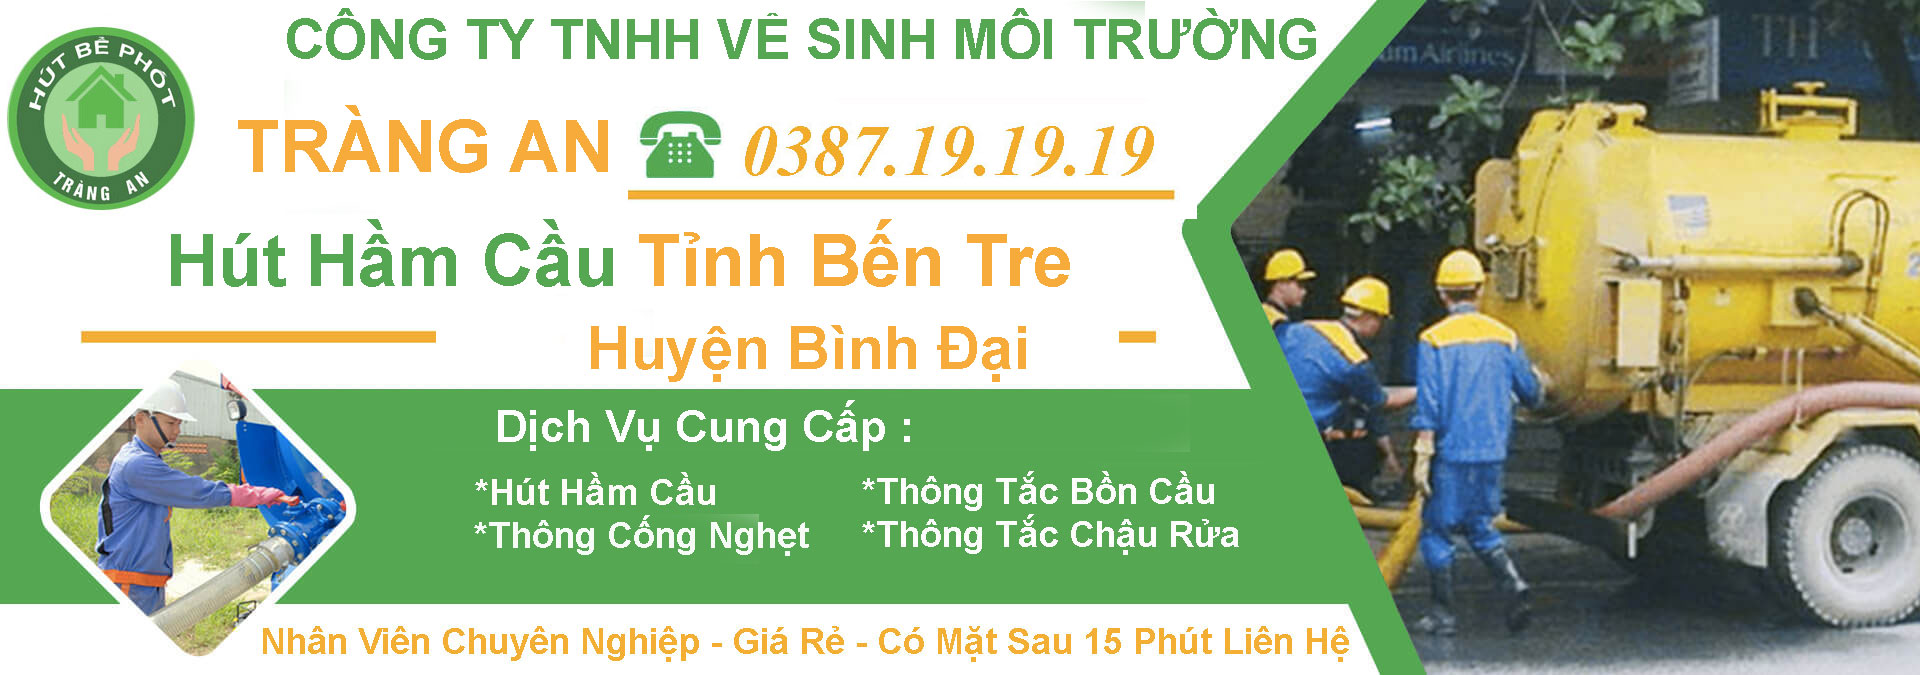 Hut Ham Cau Tinh Ben Tre Huyen Binh Dai